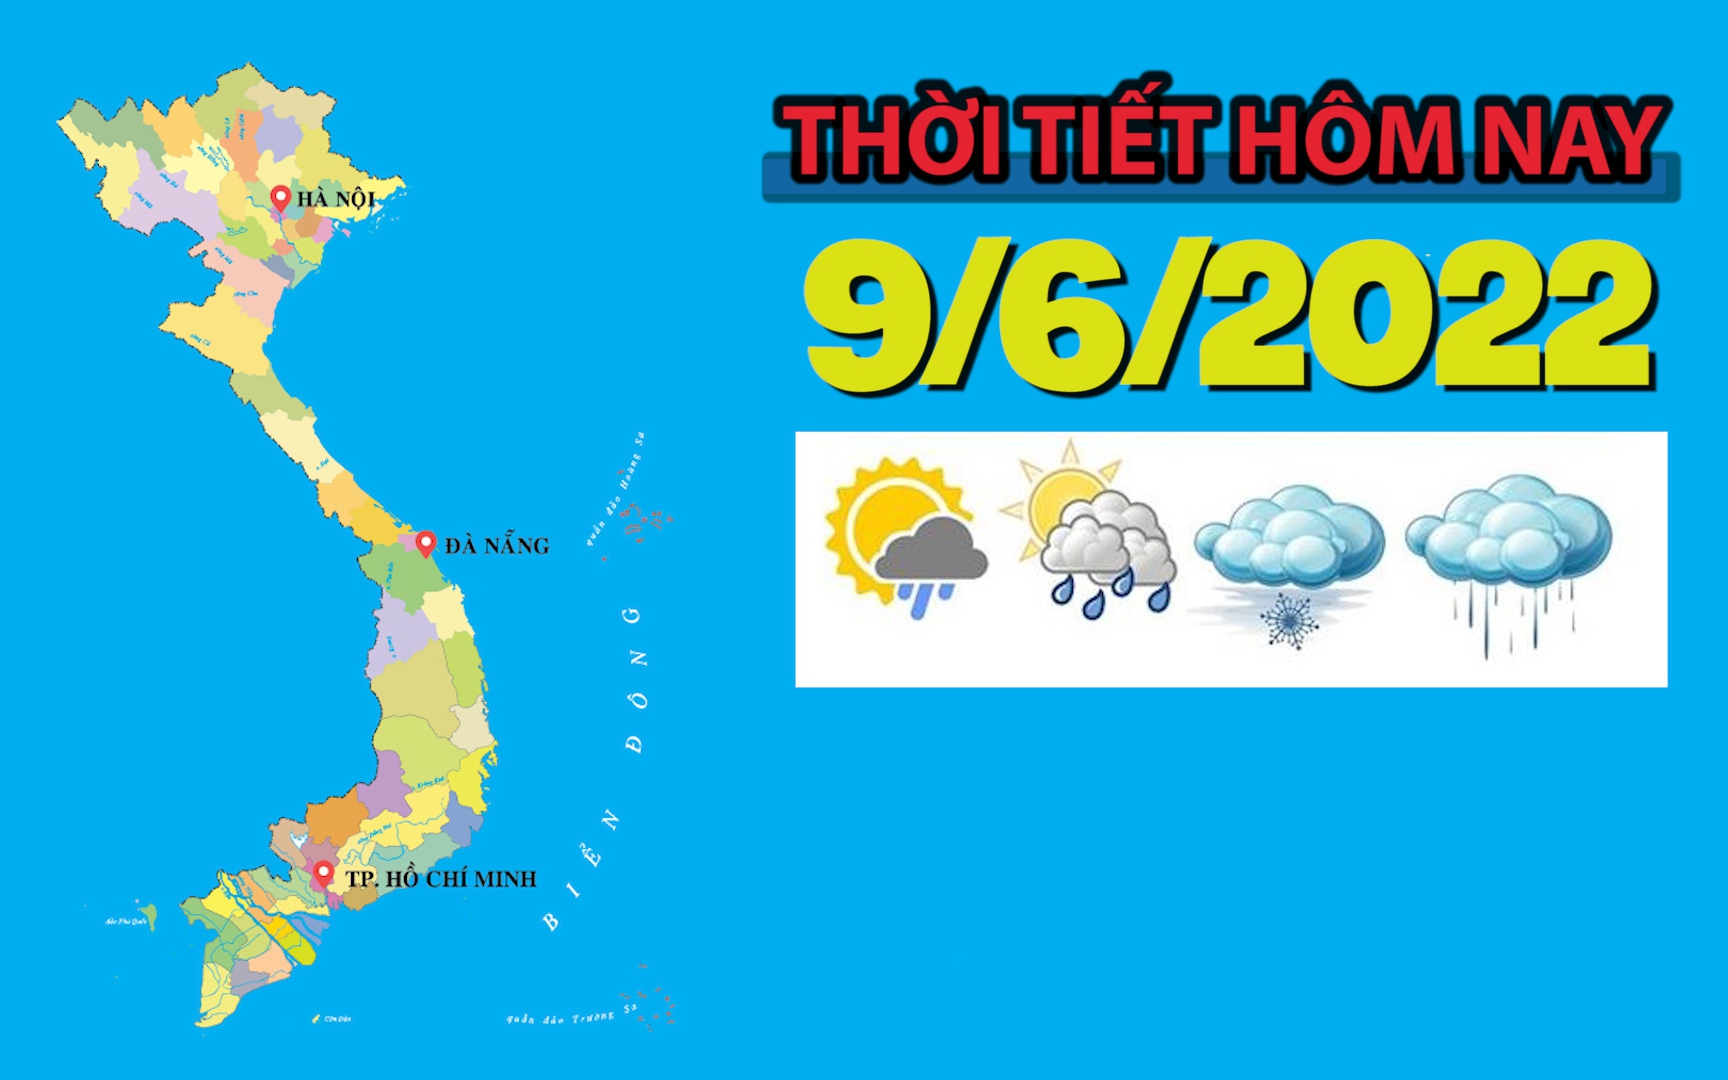 Thời tiết hôm nay 9/6/2022: Hà Nội mưa to, vùng núi Bắc Bộ sẽ có mưa rất to